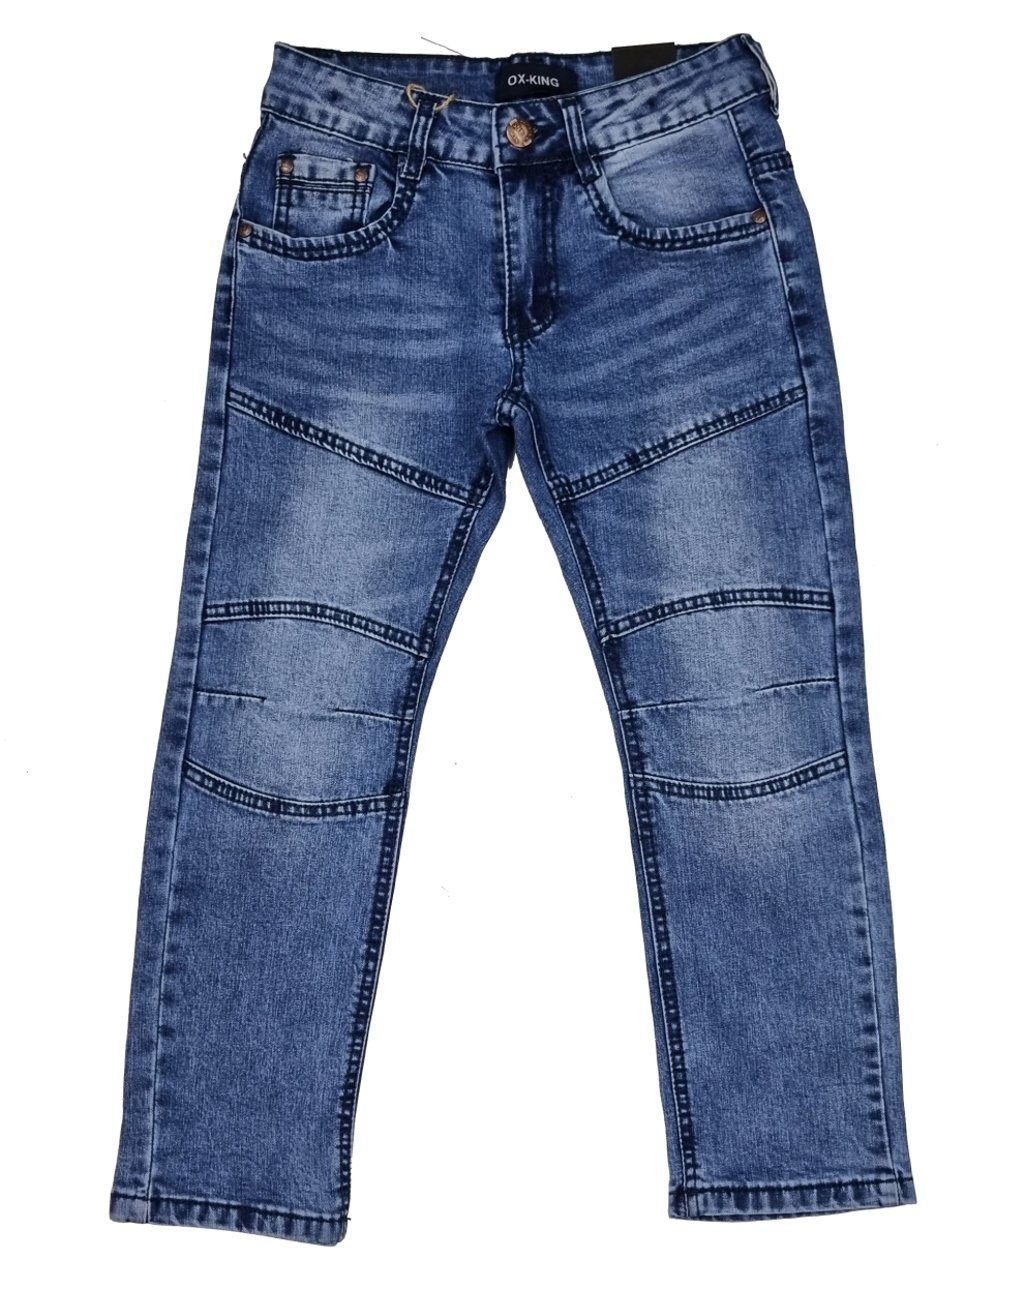 Fashion Hose J626 Jungen Jeans Bequeme Jeans Jeanshose, Kinderhose Boy Kinder